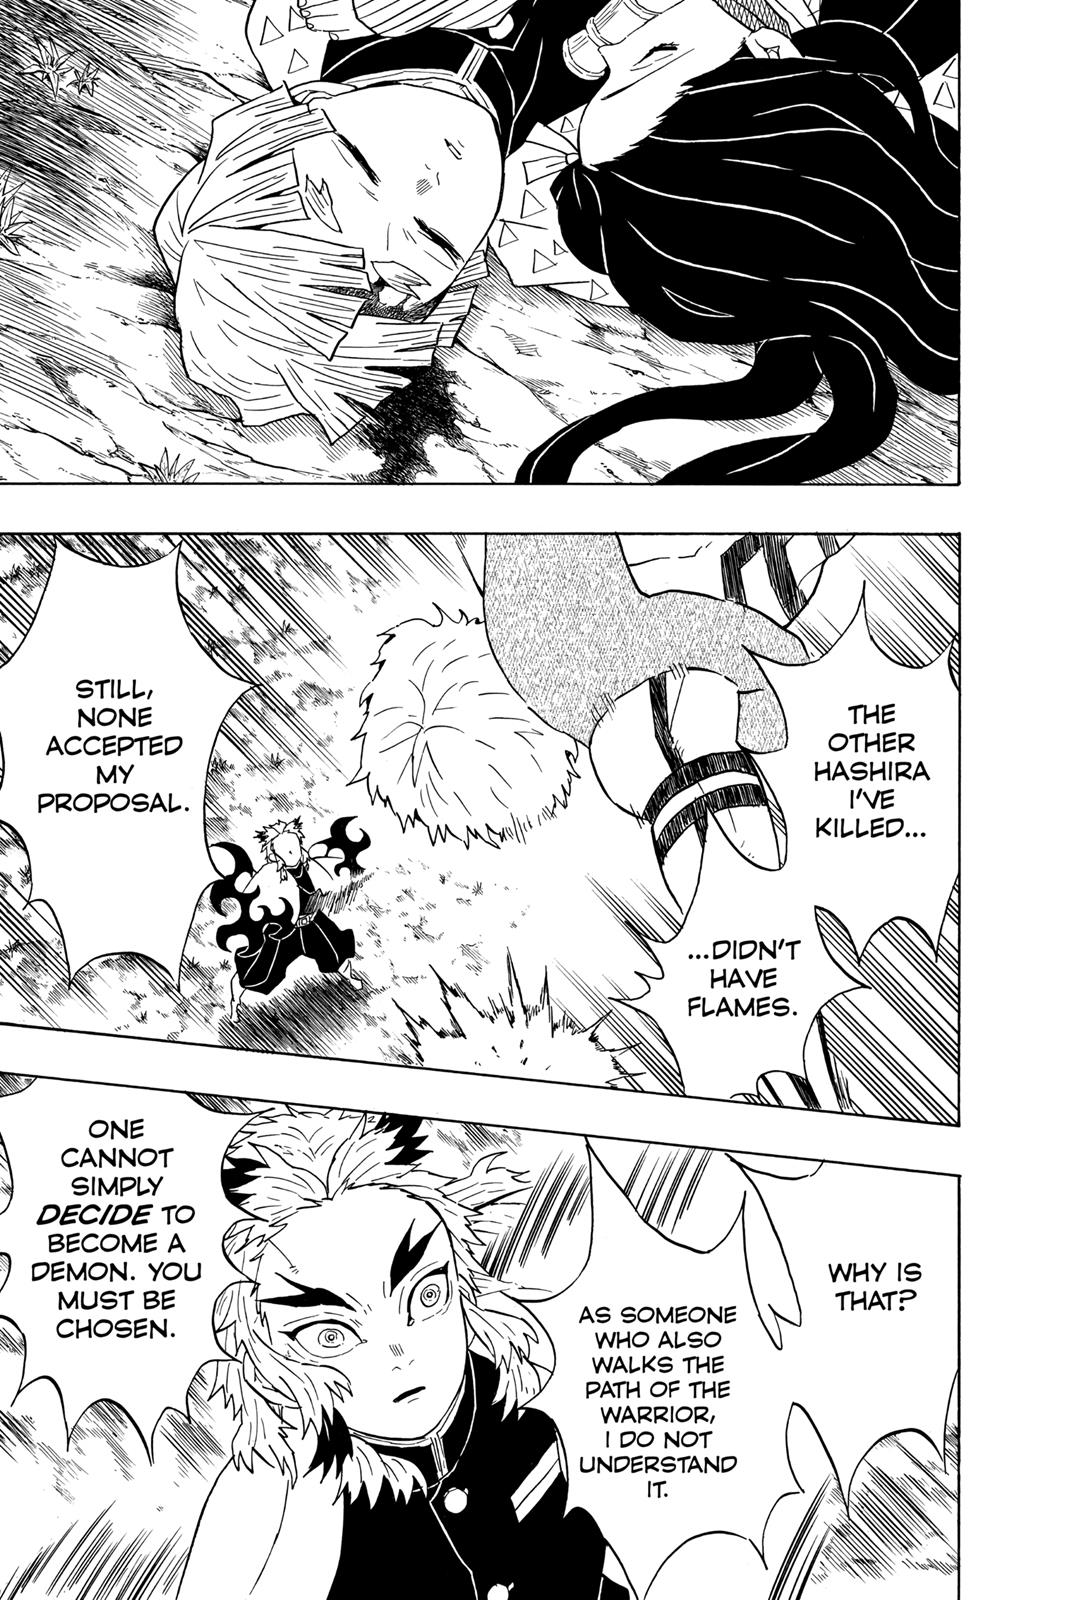 Demon Slayer Manga Manga Chapter - 63 - image 14